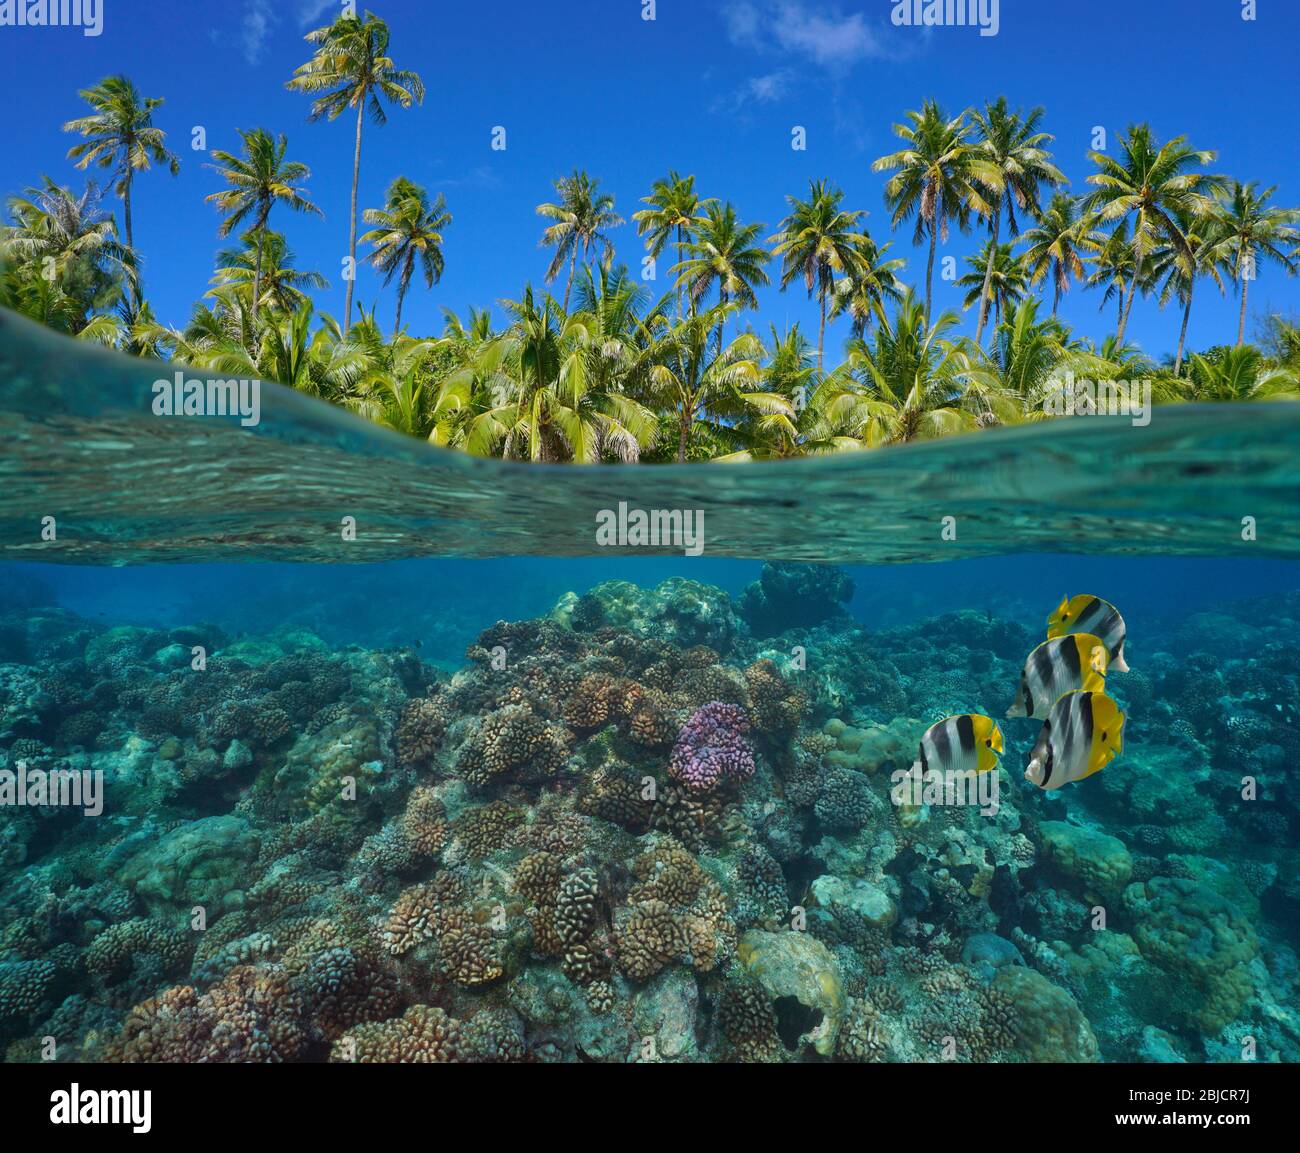 Barriera corallina con pesci tropicali sottomarini e verde fogliame di palme da cocco, vista su superficie sotto l'acqua, Polinesia francese, oceano Pacifico Foto Stock